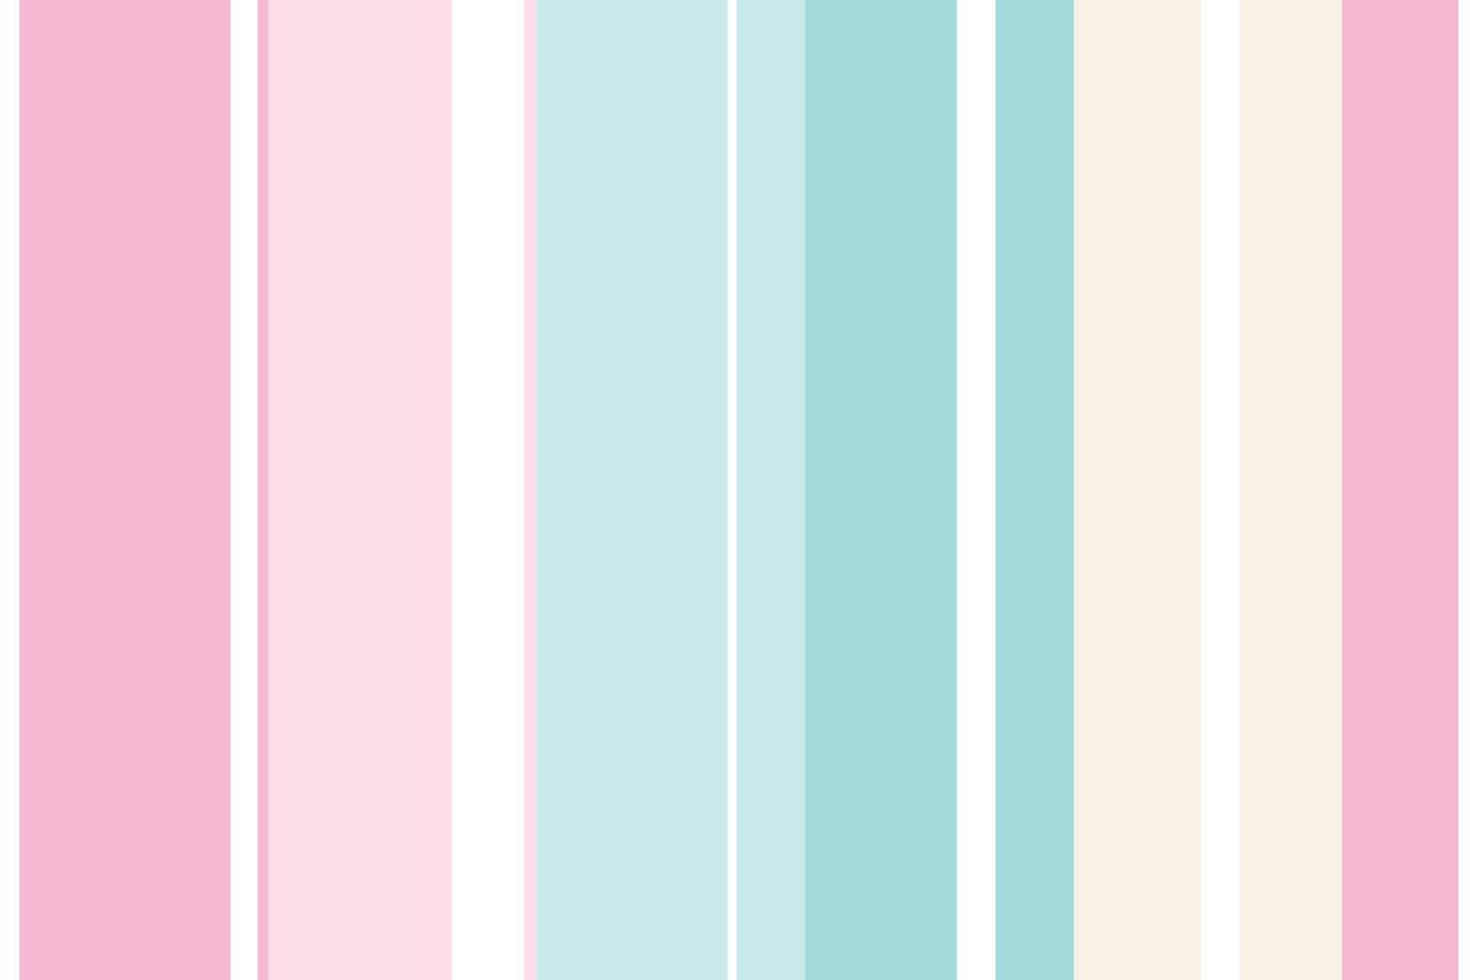 listras equilibradas em cores pastel um padrão de listras simétricas em que listras verticais coloridas são dispostas ao redor do centro. vetor